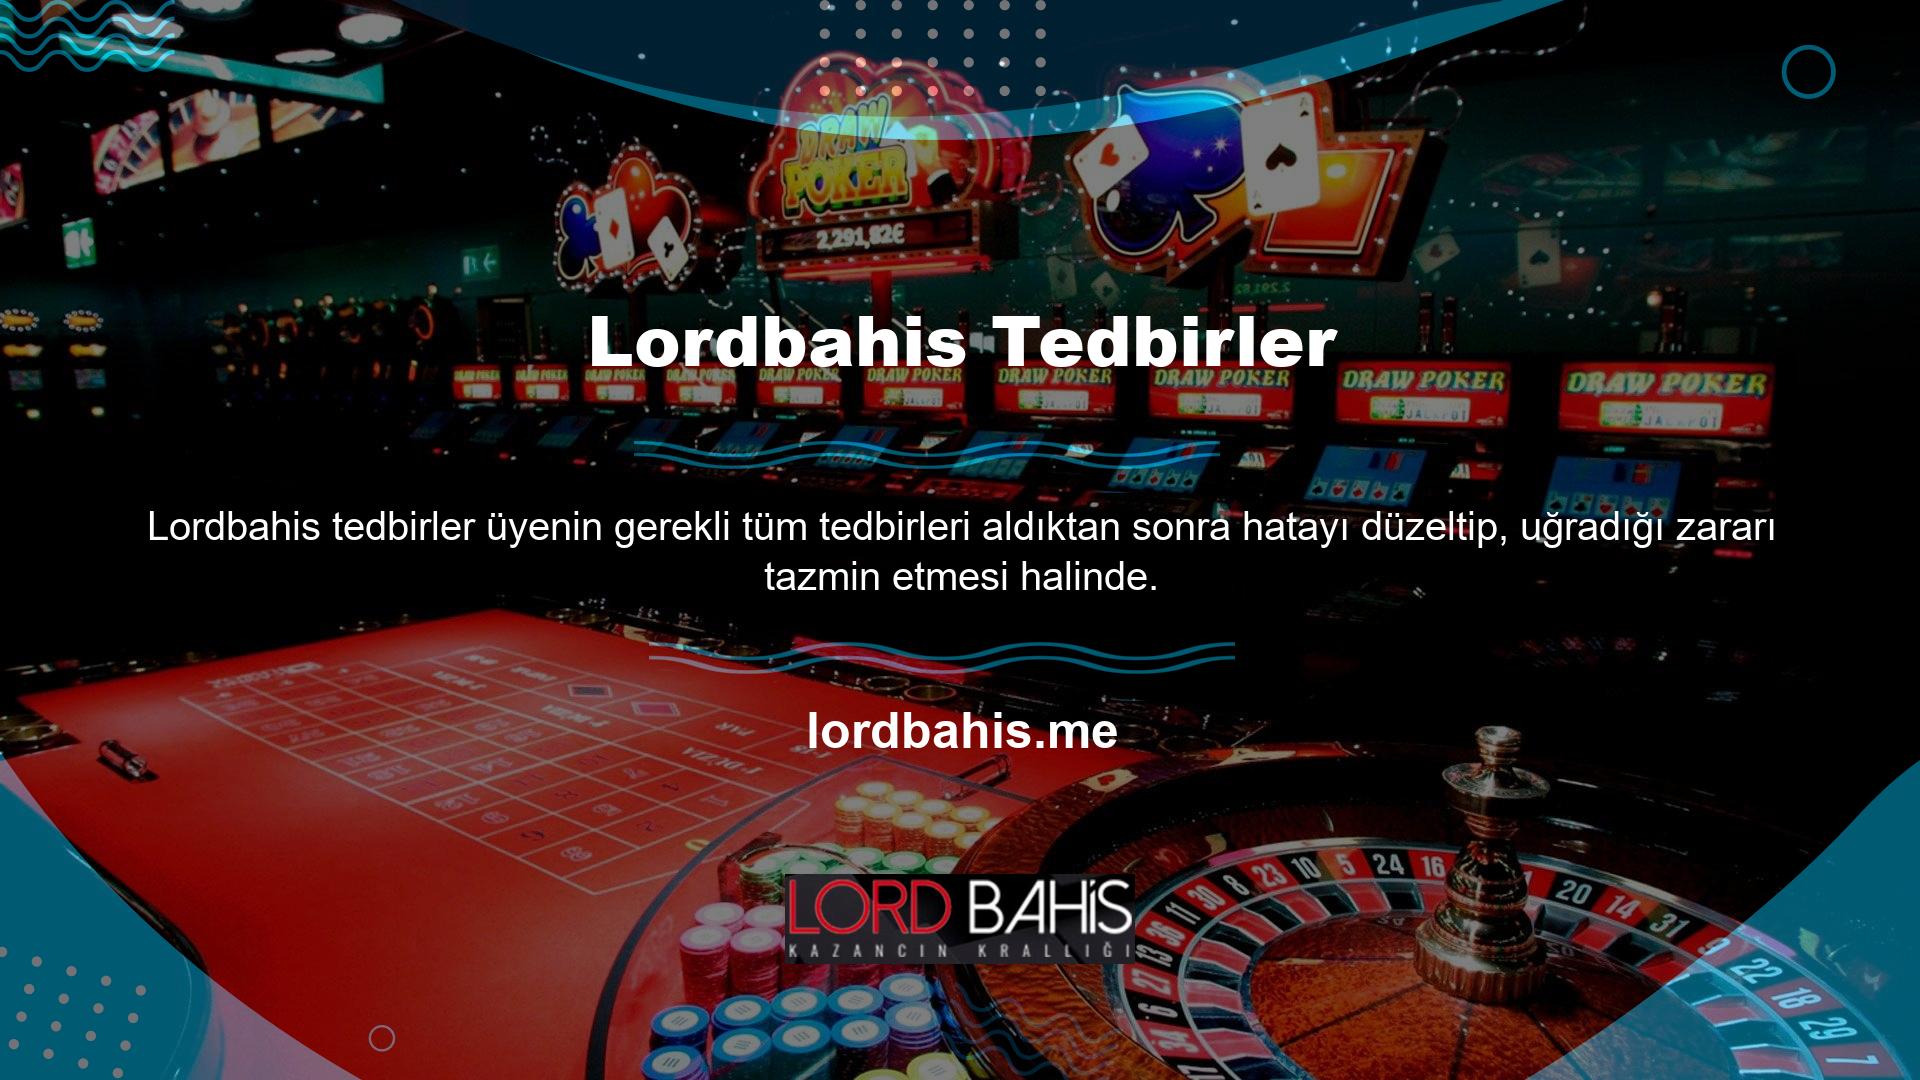 Şikayet yapısında Lordbahis, oyuncu forumları ve şikayet web siteleri gibi çevrimiçi şikayet platformlarını araştırma konusunda deneyime sahip şikayet birimleriyle birlikte çalışır